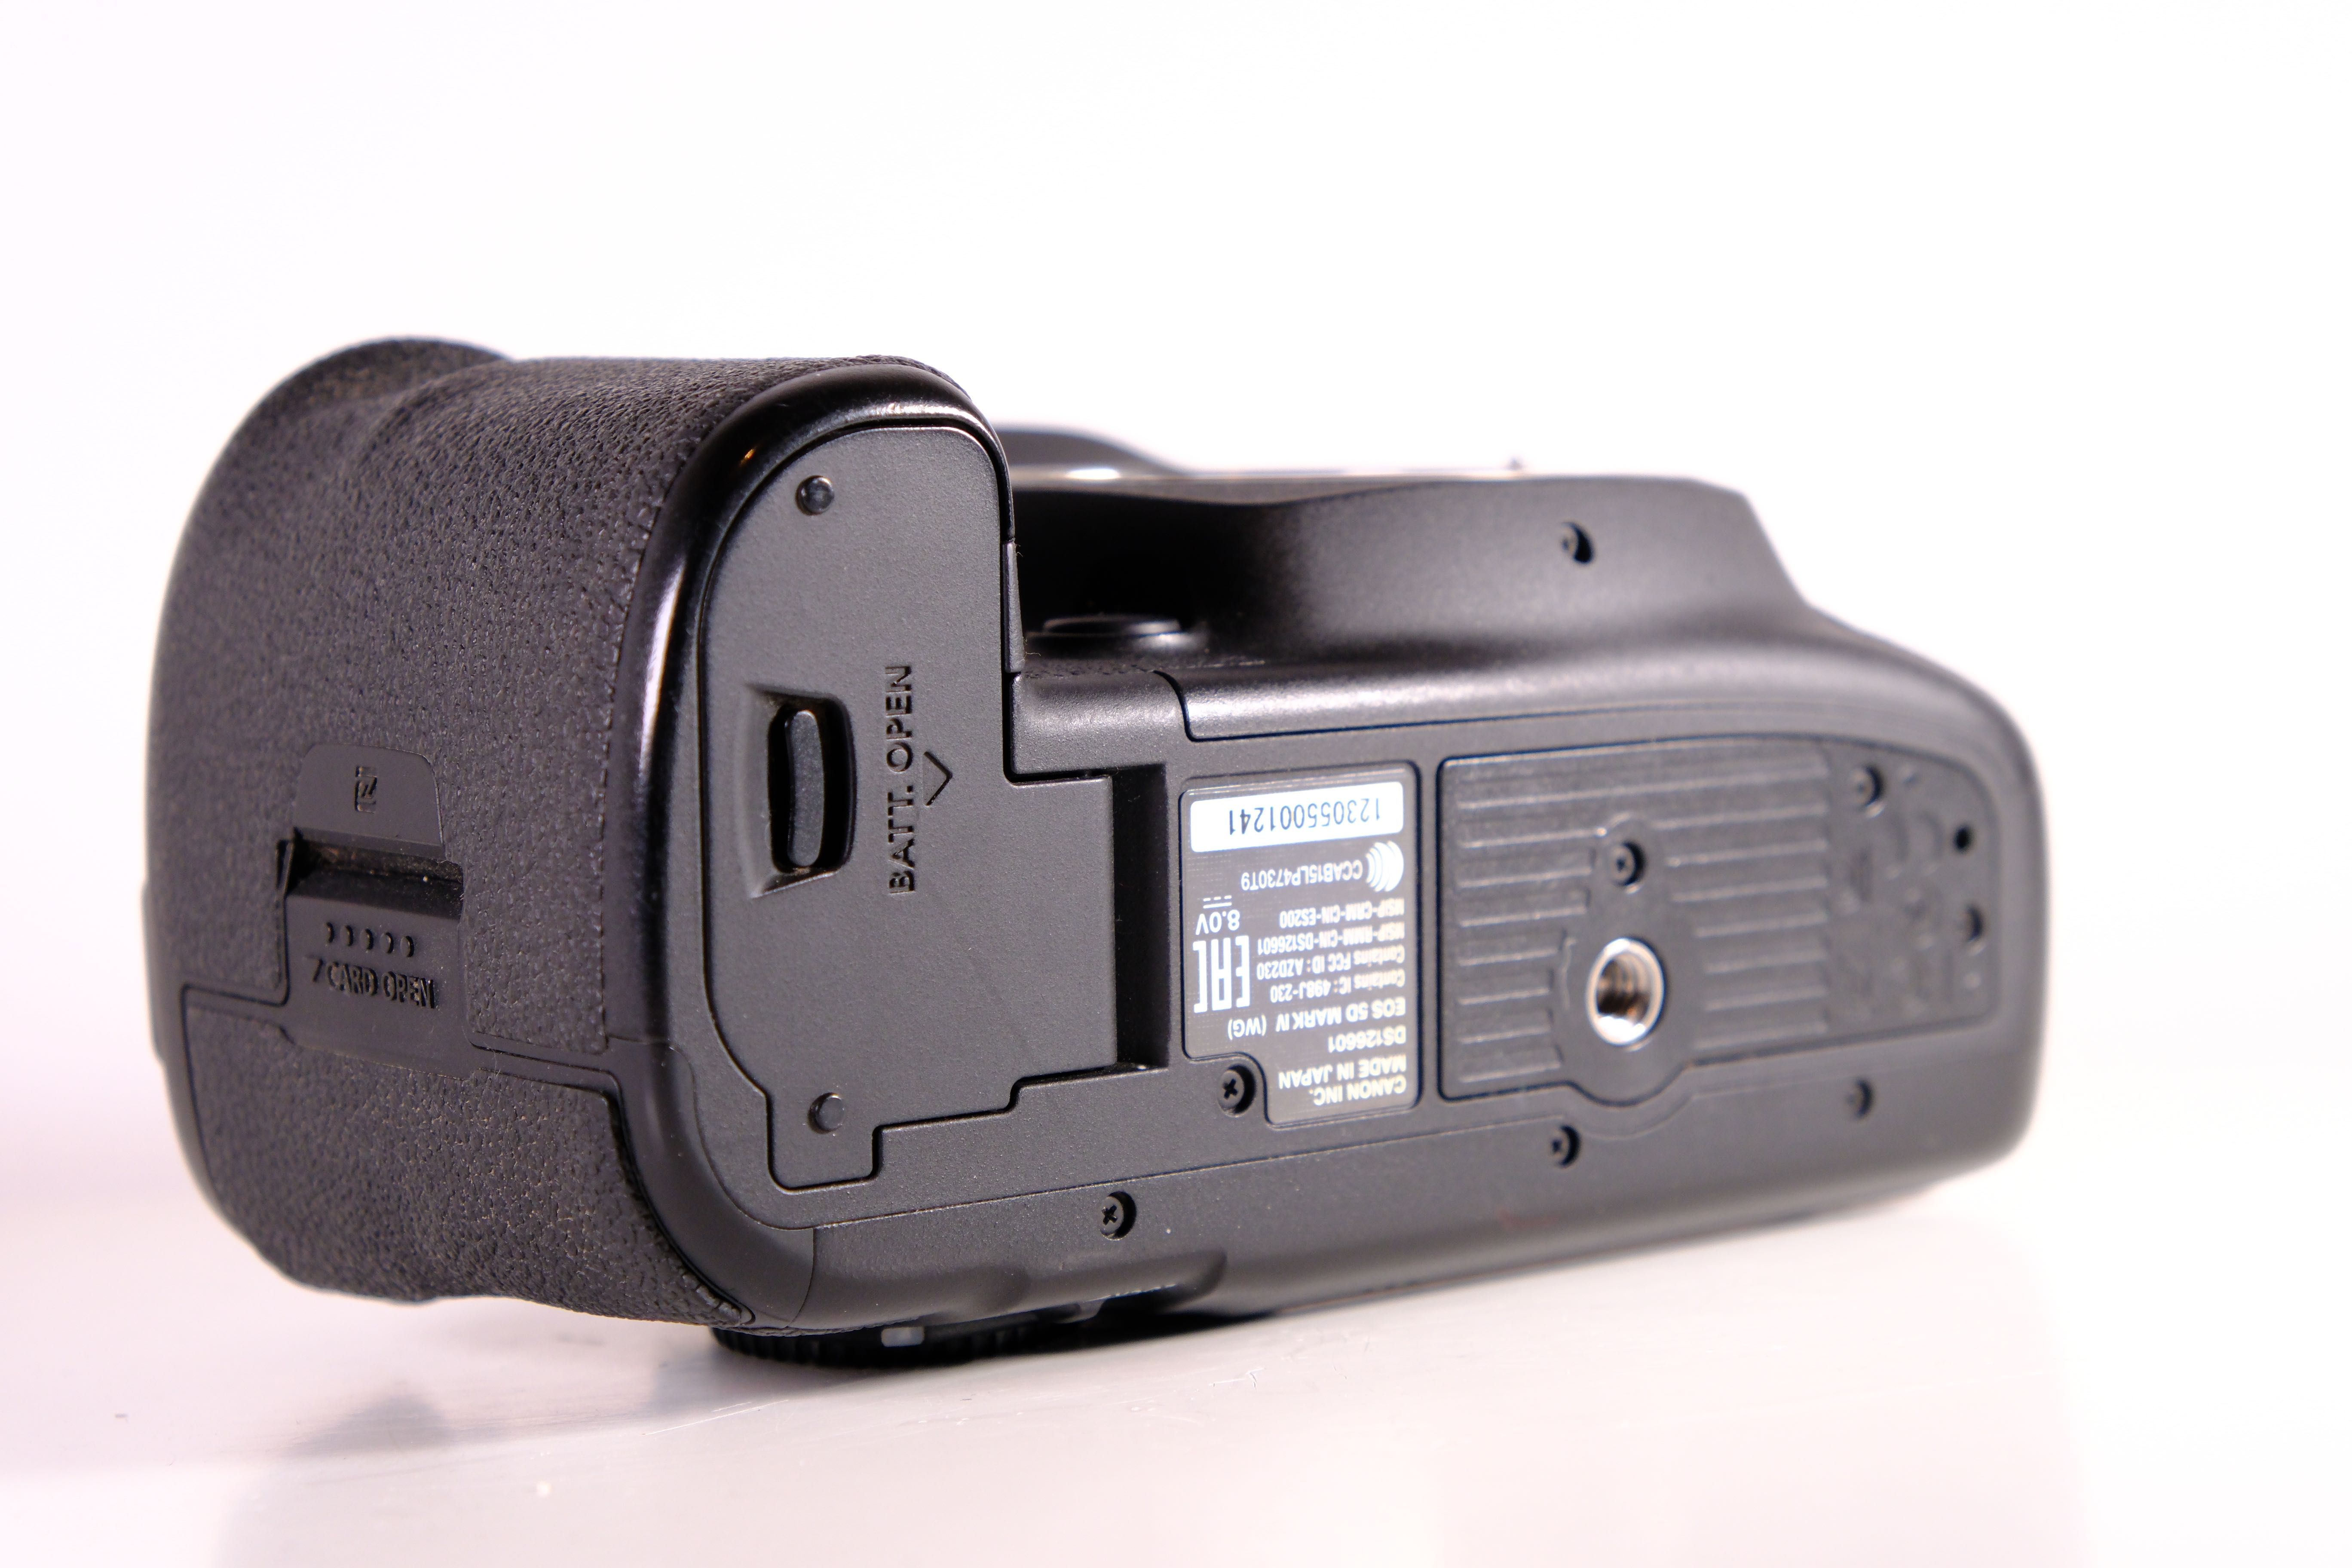 Canon EOS 5D Mark IV Пробіг 38 тис кадрів+ гарантія / без передоплат